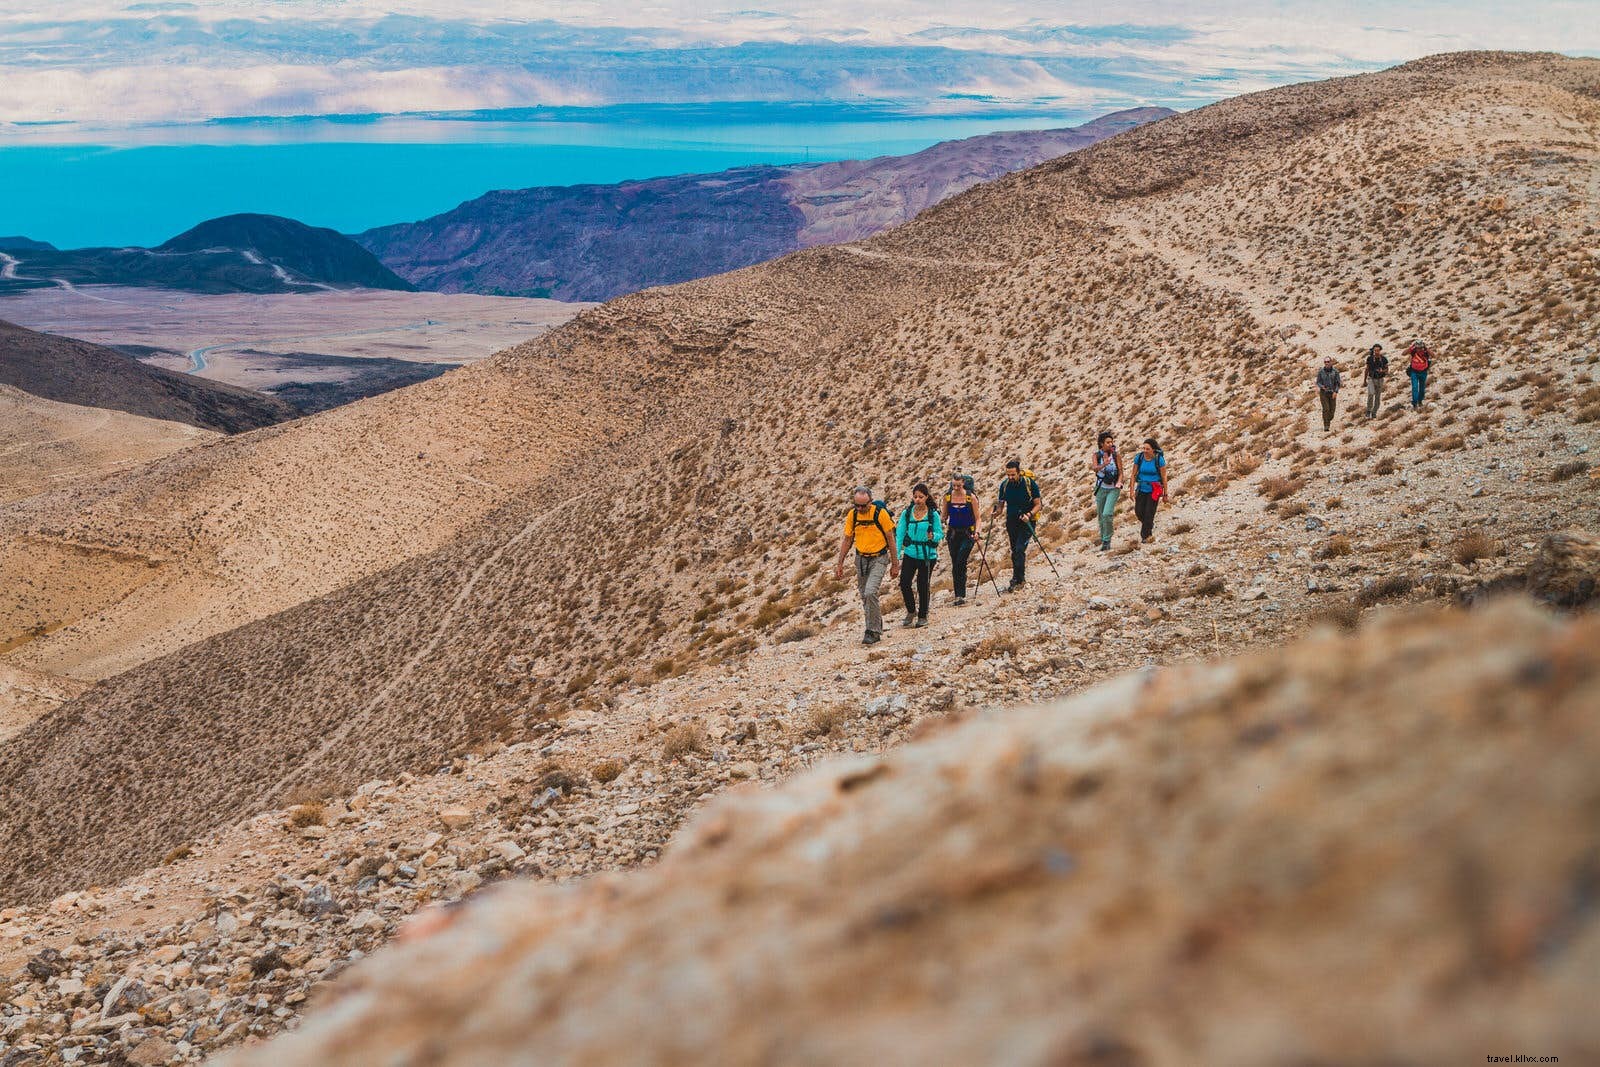 Mendaki Jalur Jordan, perjalanan lintas alam baru di Timur Tengah 